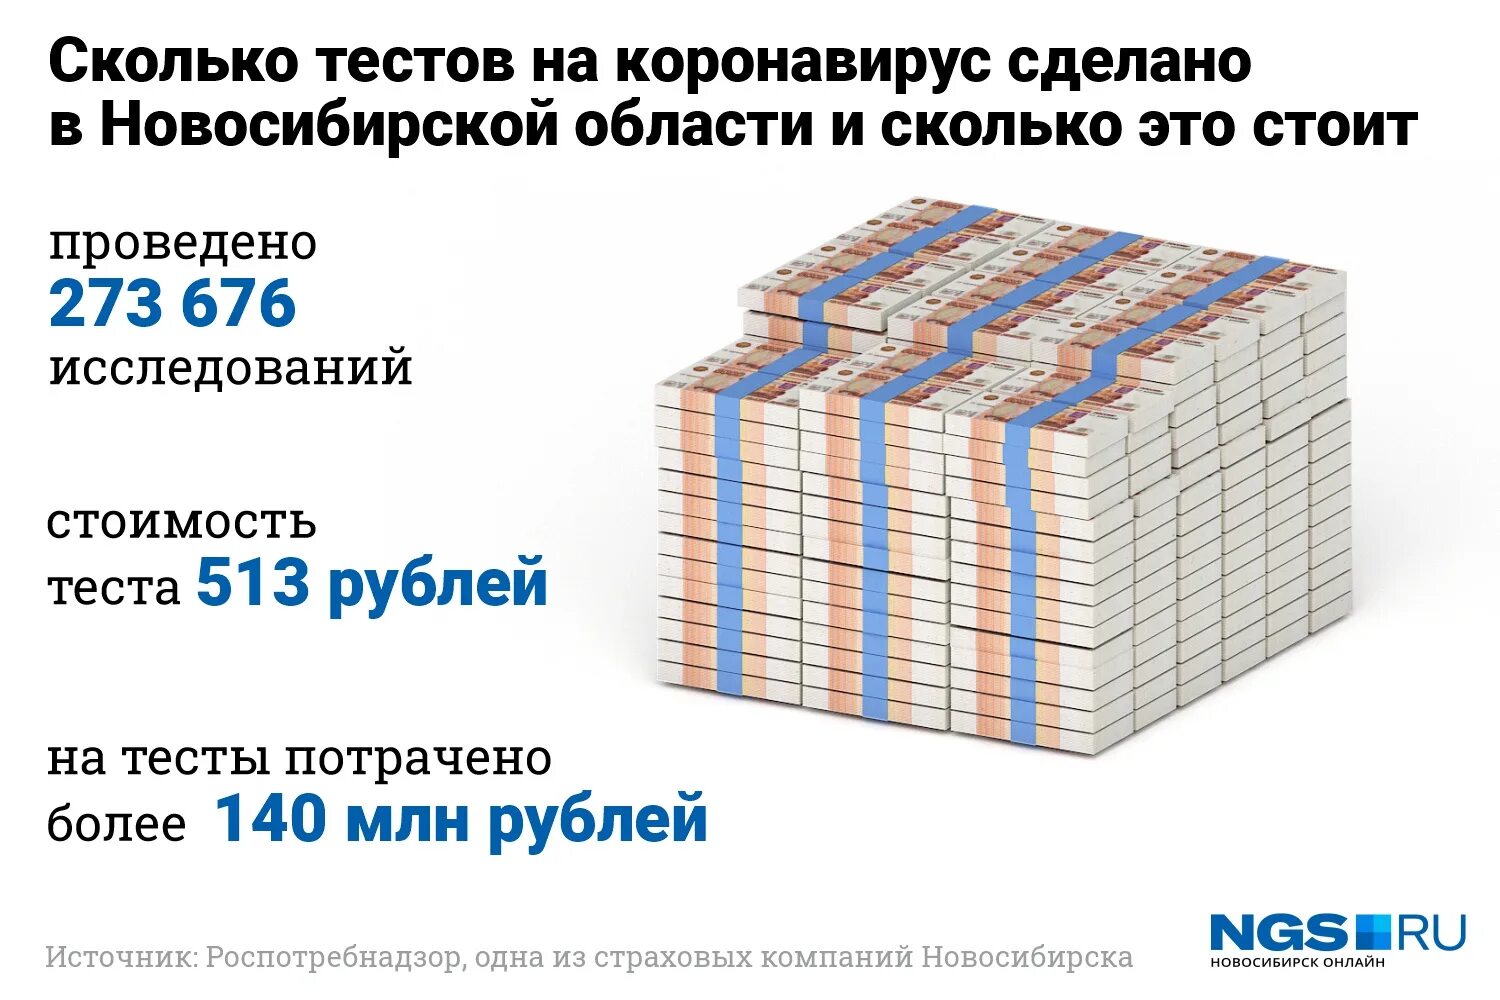 200 миллионов рублей сколько. Сколько денег. Сколько всего денег. Сколько всего денег в мире. Сколько всего денег во всем мире.